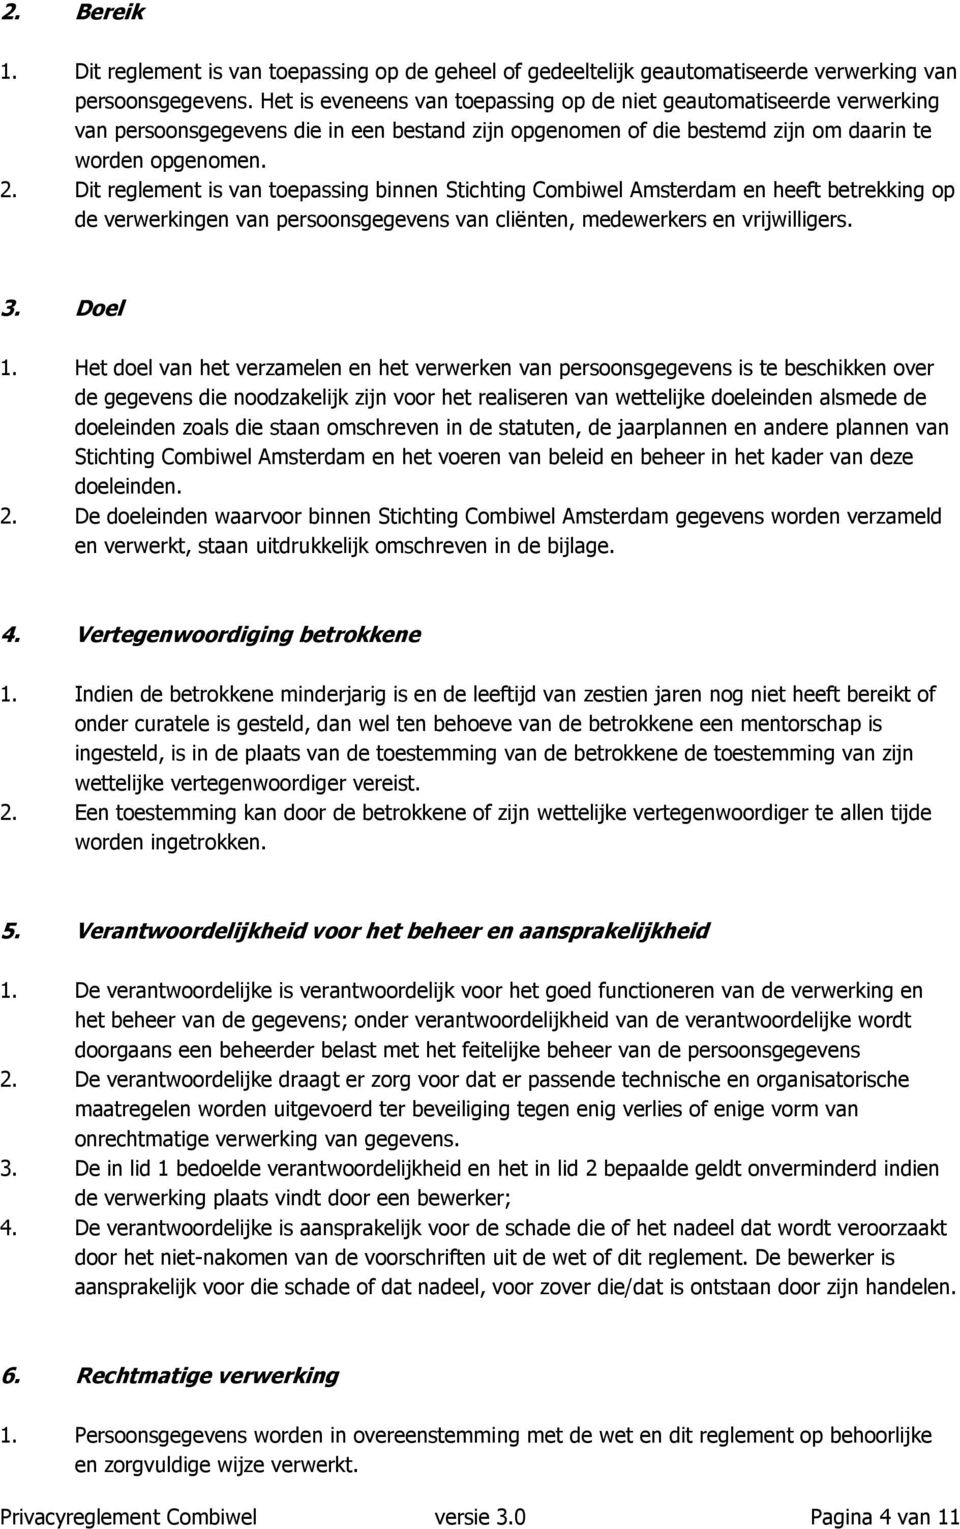 Dit reglement is van toepassing binnen Stichting Combiwel Amsterdam en heeft betrekking op de verwerkingen van persoonsgegevens van cliënten, medewerkers en vrijwilligers. 3. Doel 1.